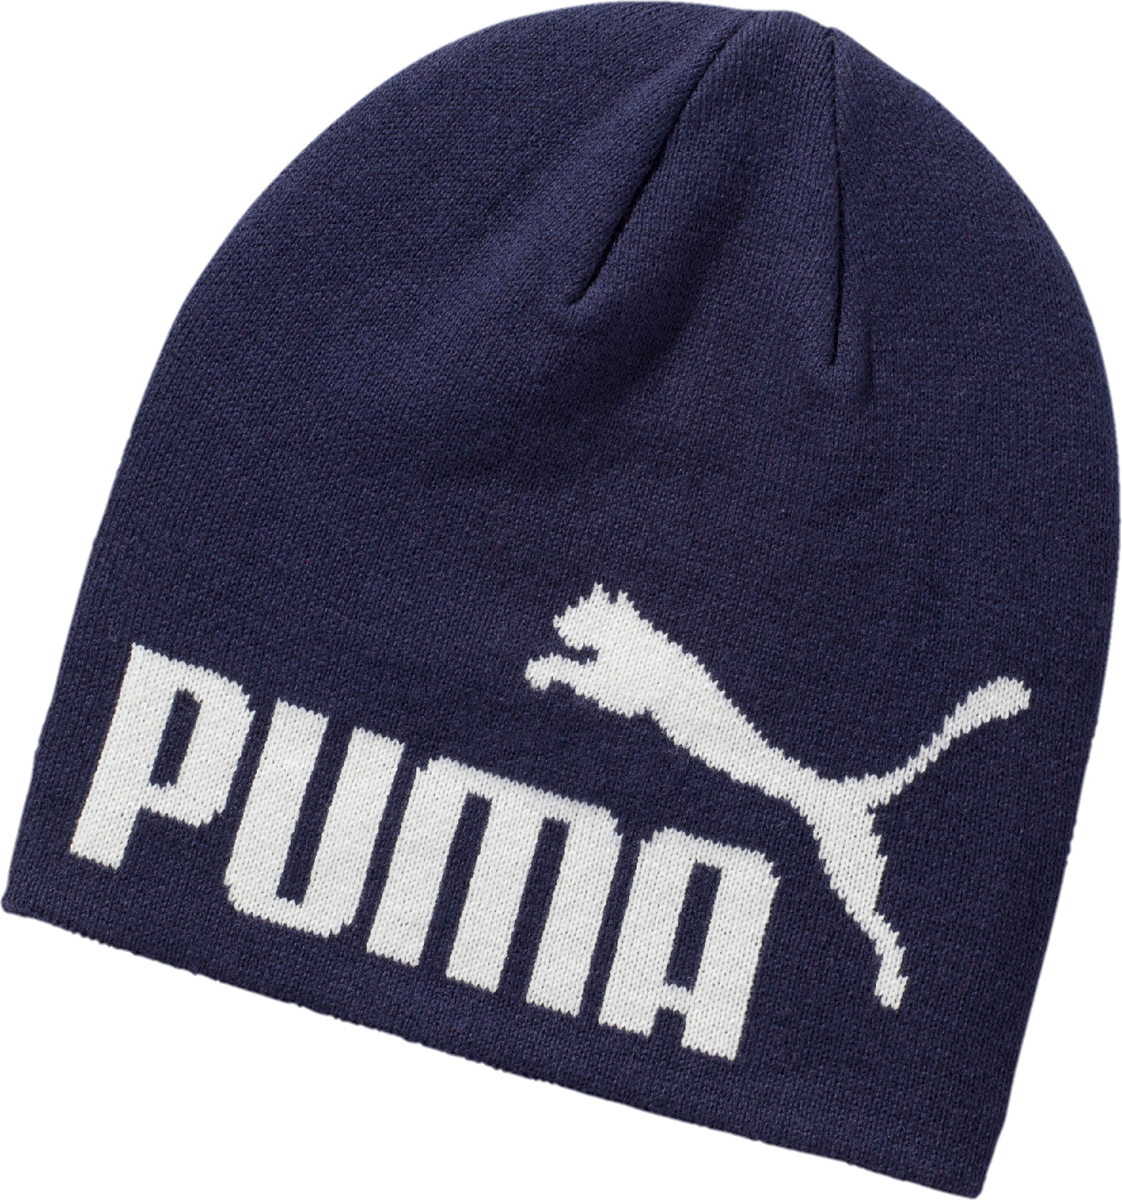 Шапка Puma Ess Big Cat Beanie, цвет: темно-синий, белый. 05292519. Размер универсальный